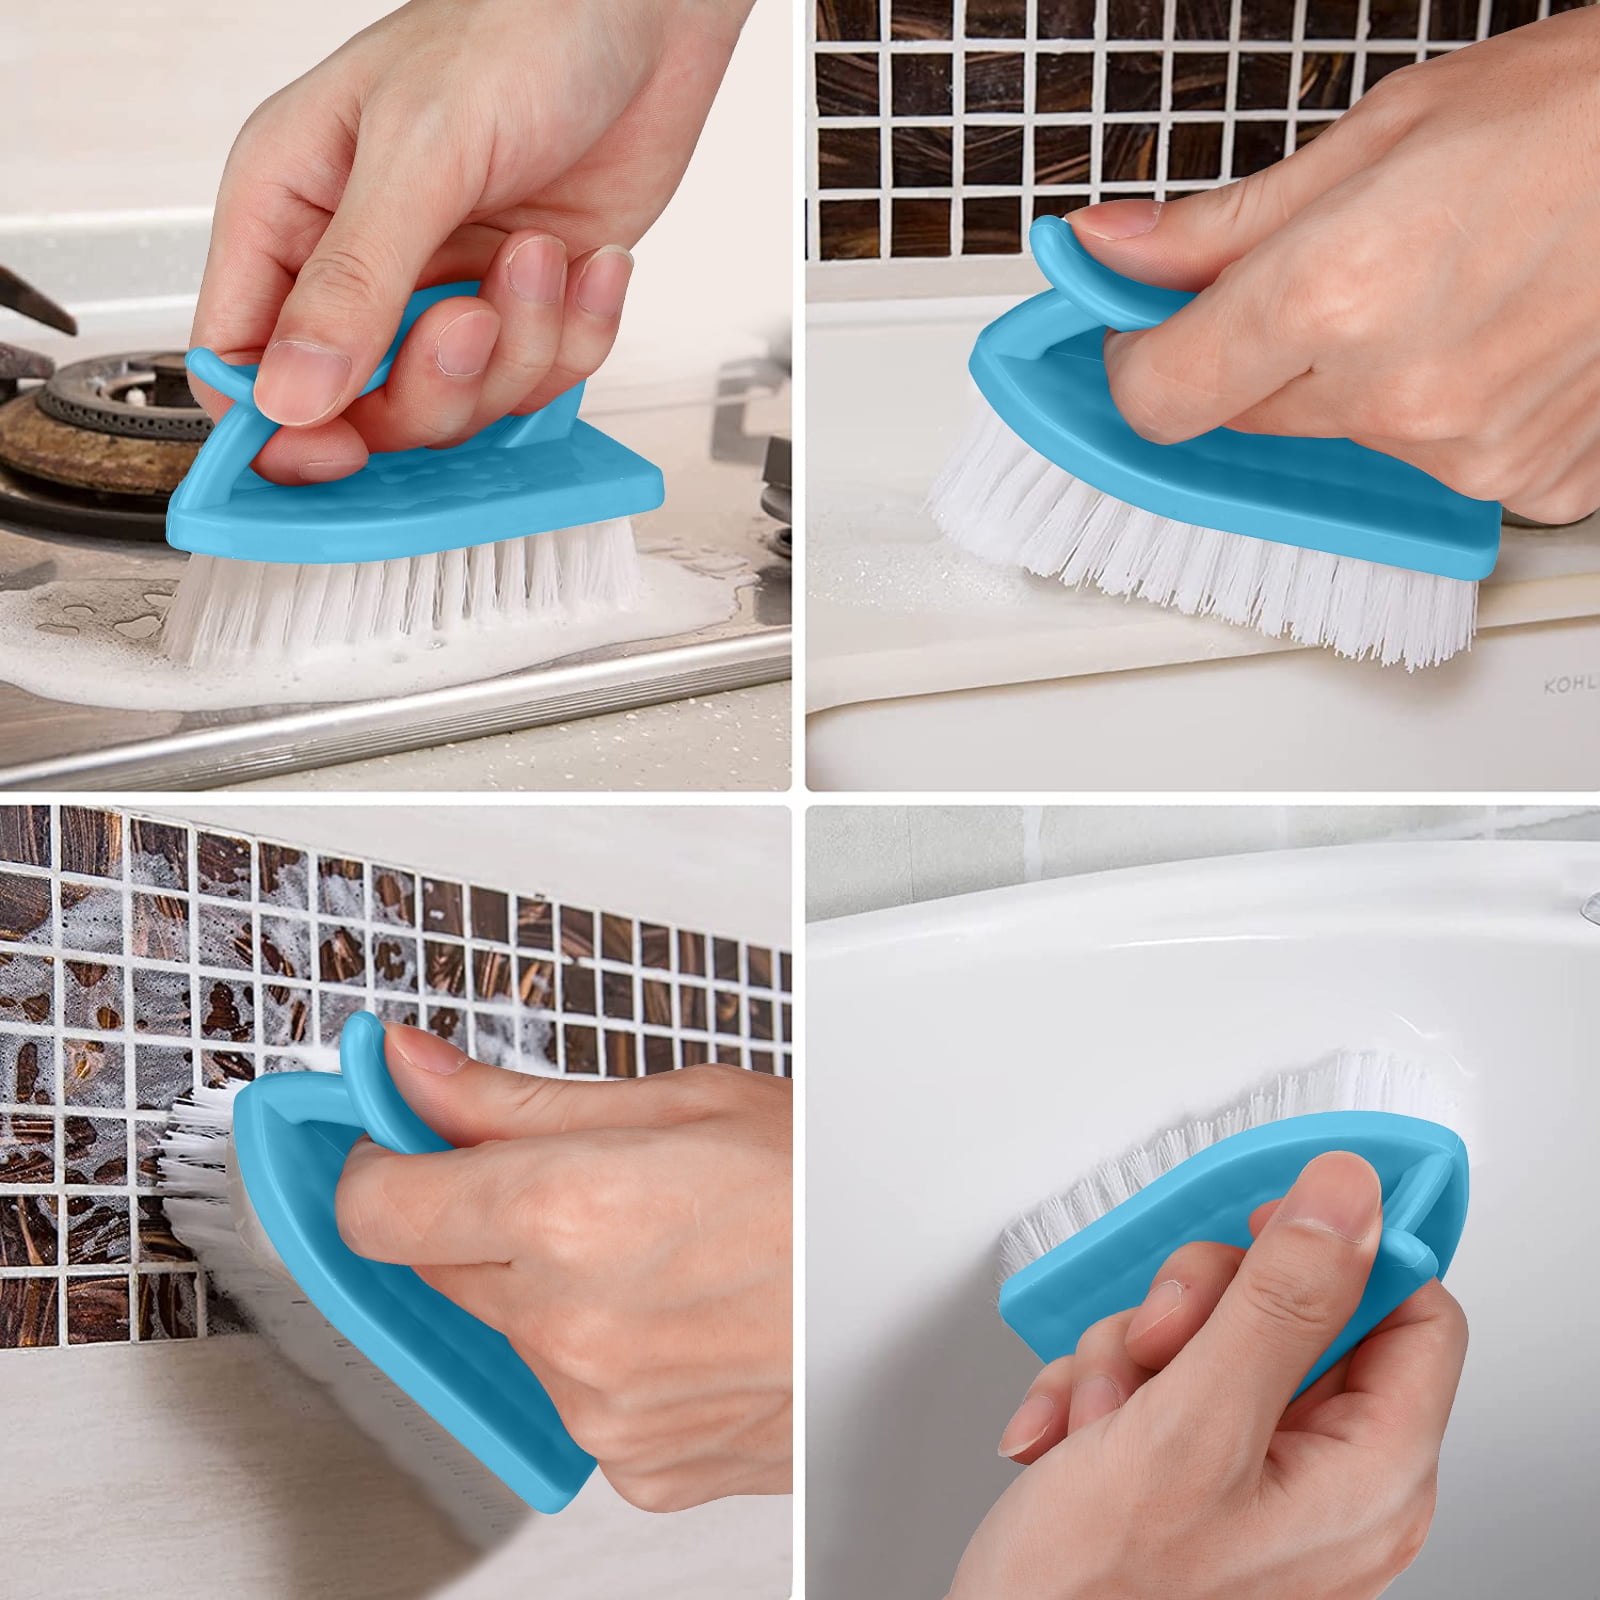 Hesxuno Household Plastic Laundry Brush Cleaning Brush Hard Bristle  Multi-functional Washbasin Brush Shoe Brush Clothes Board Brush